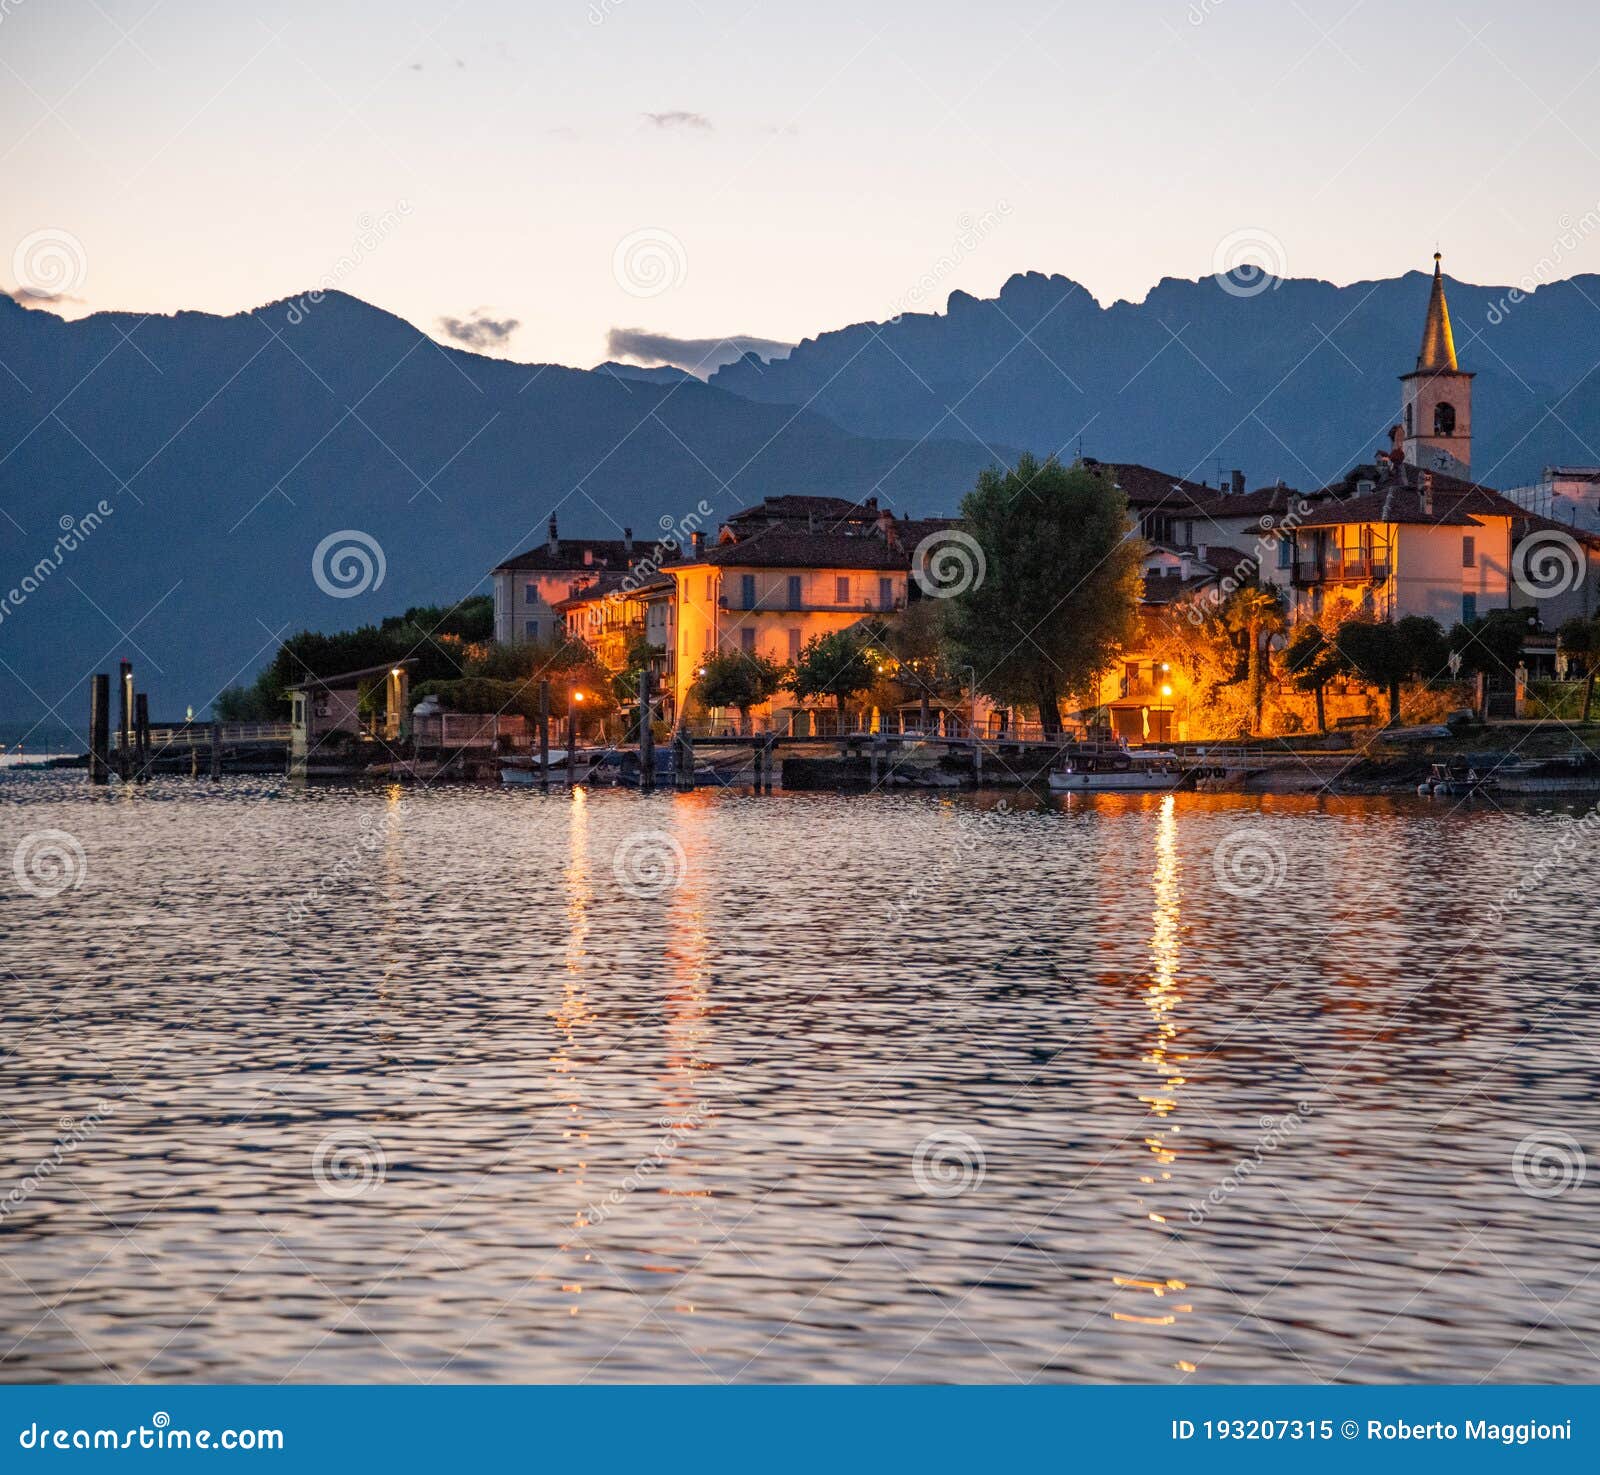 lake - lago maggiore, italy. isola dei pescatori, stresa by night